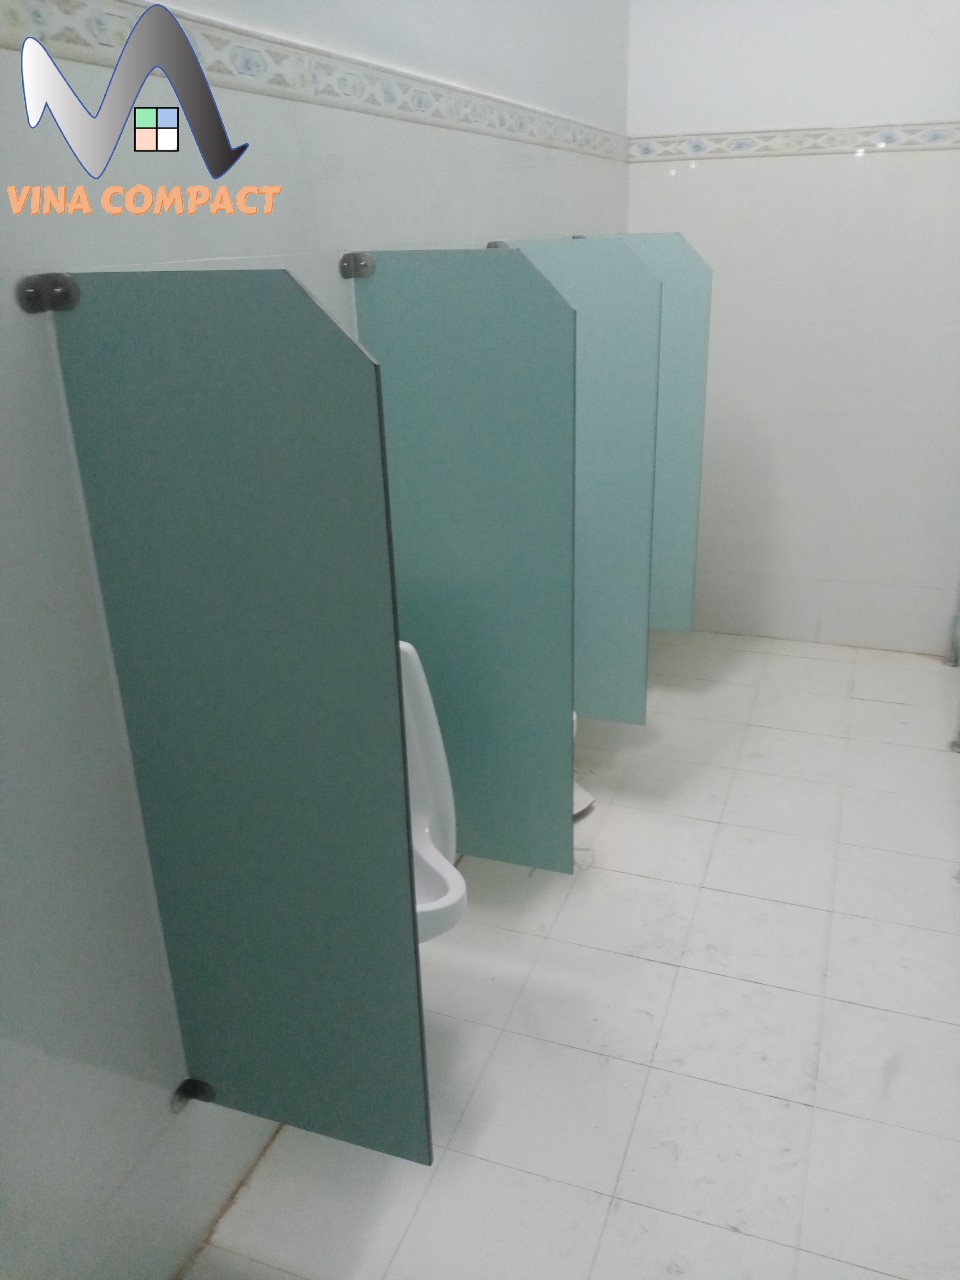 Chuyên thi công vách ngăn vệ sinh tấm compact tại Lâm Đồng